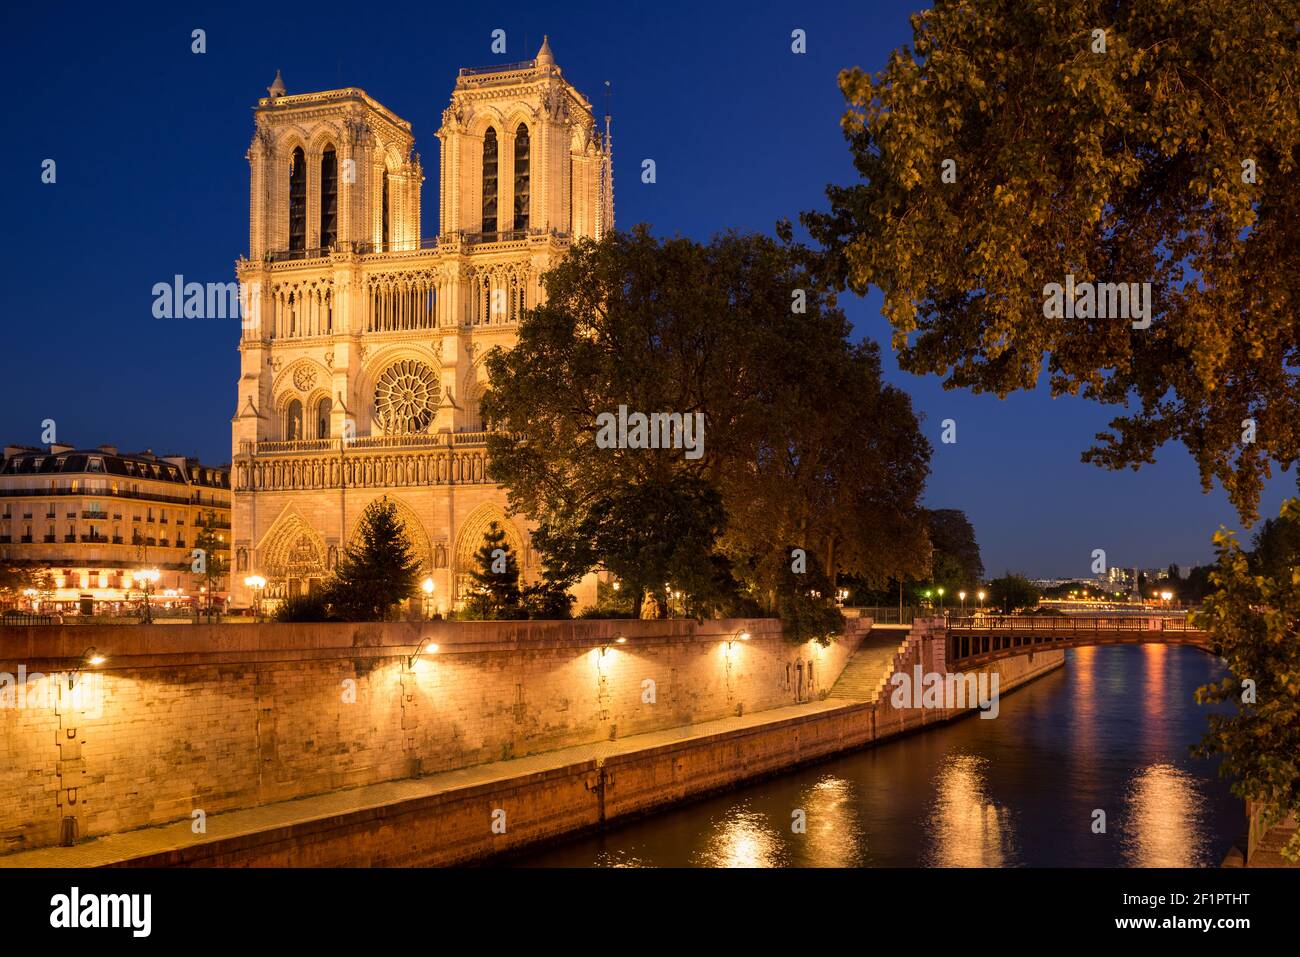 Cathédrale notre Dame de Paris illuminée au crépuscule en été avec les rives de la Seine (site classé au patrimoine mondial de l'UNESCO). Ile de la Cité, Paris, France Banque D'Images